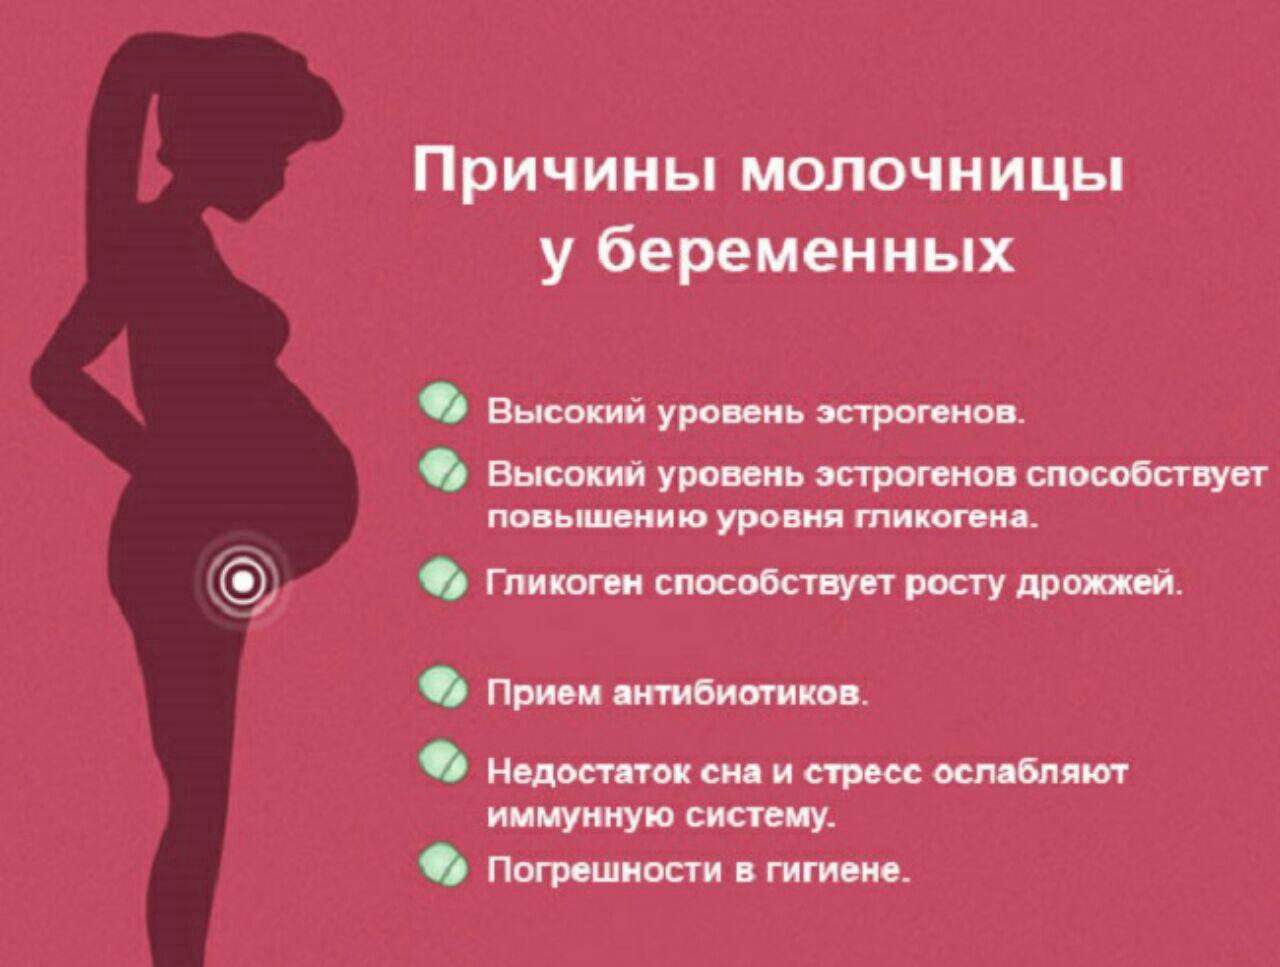 Раньше срока можно. Молочница при беременности 3 триместр симптомы. Молочница при беременности 1 триместр симптомы. Причины молочницы при беременности. Молочница при беременносьт.